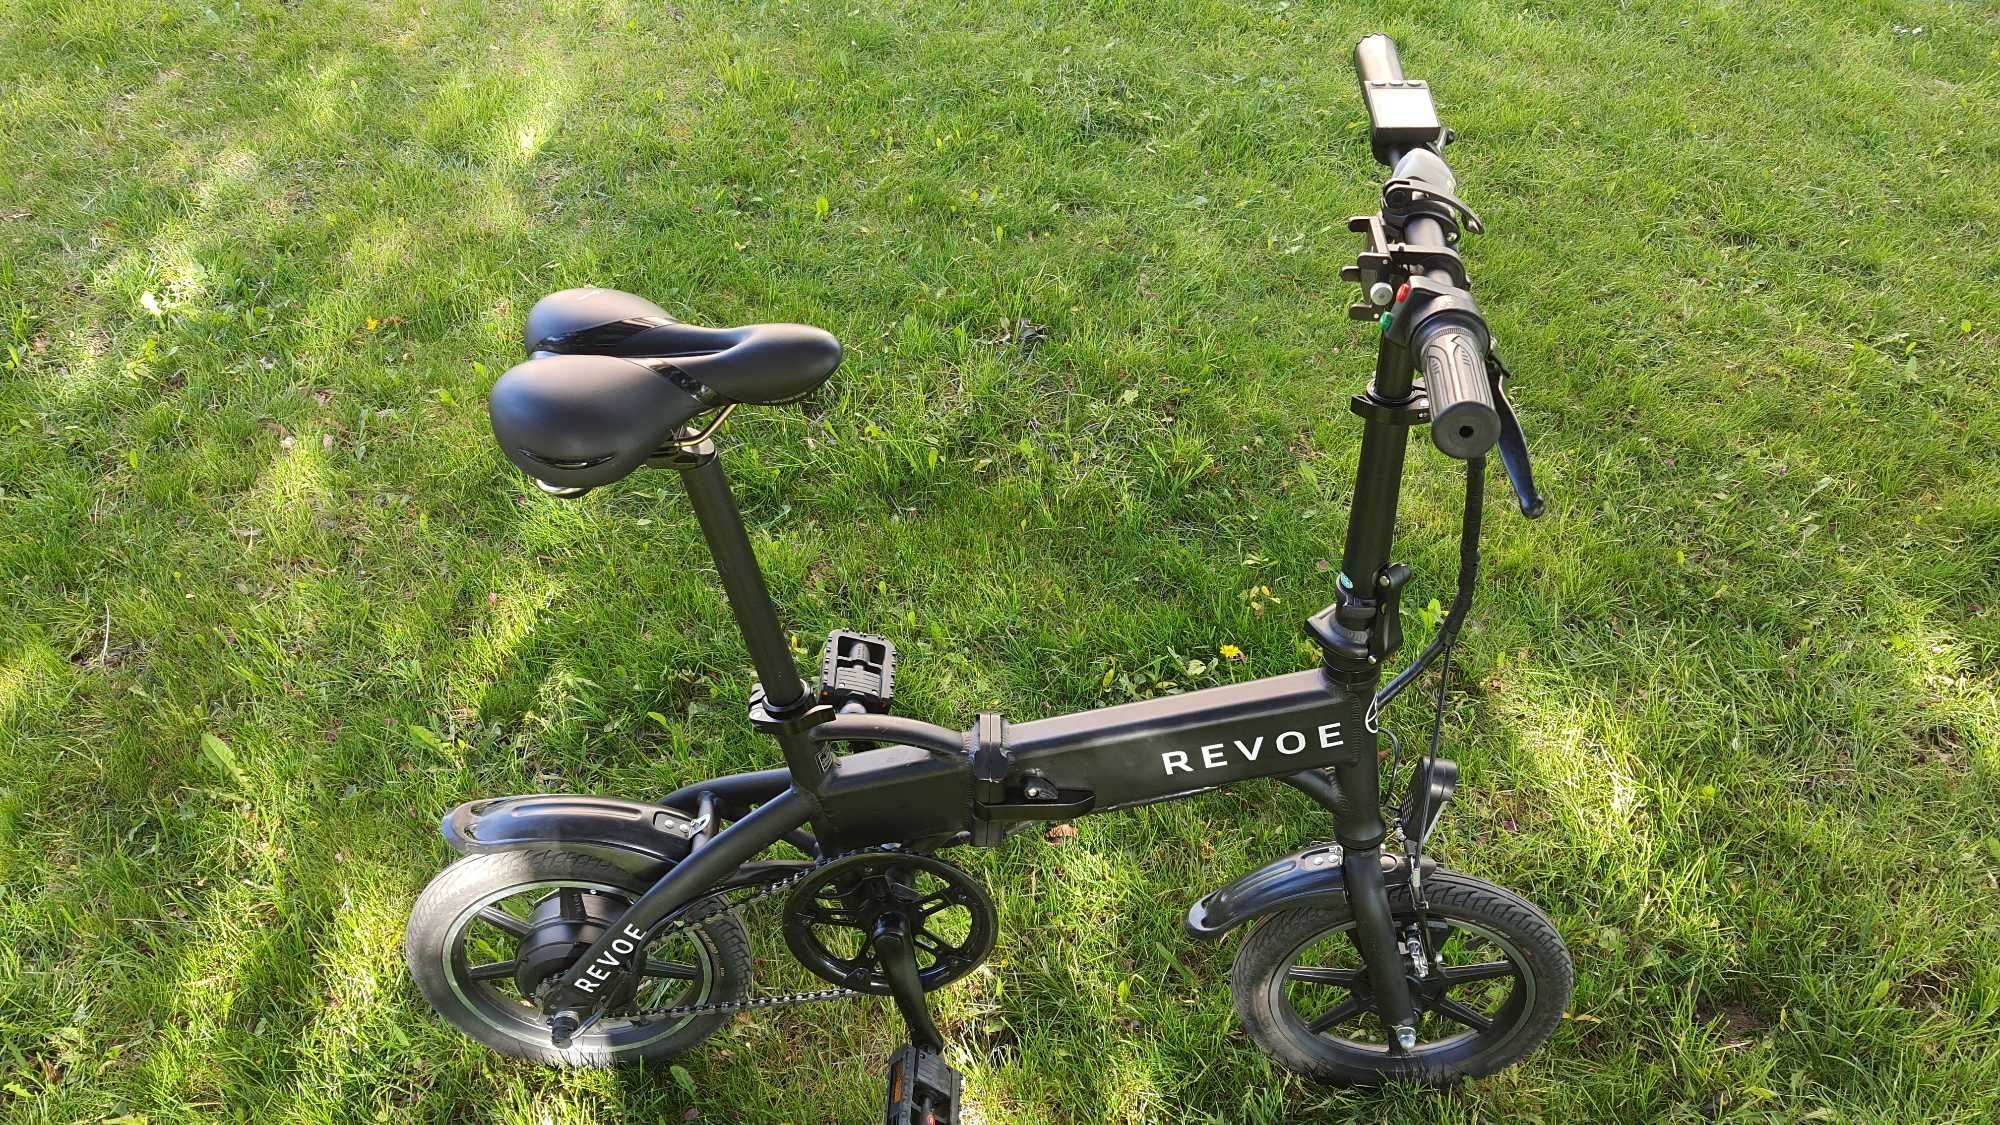 OKAZJA Skuter rower składany elektryczny składak odblokowany